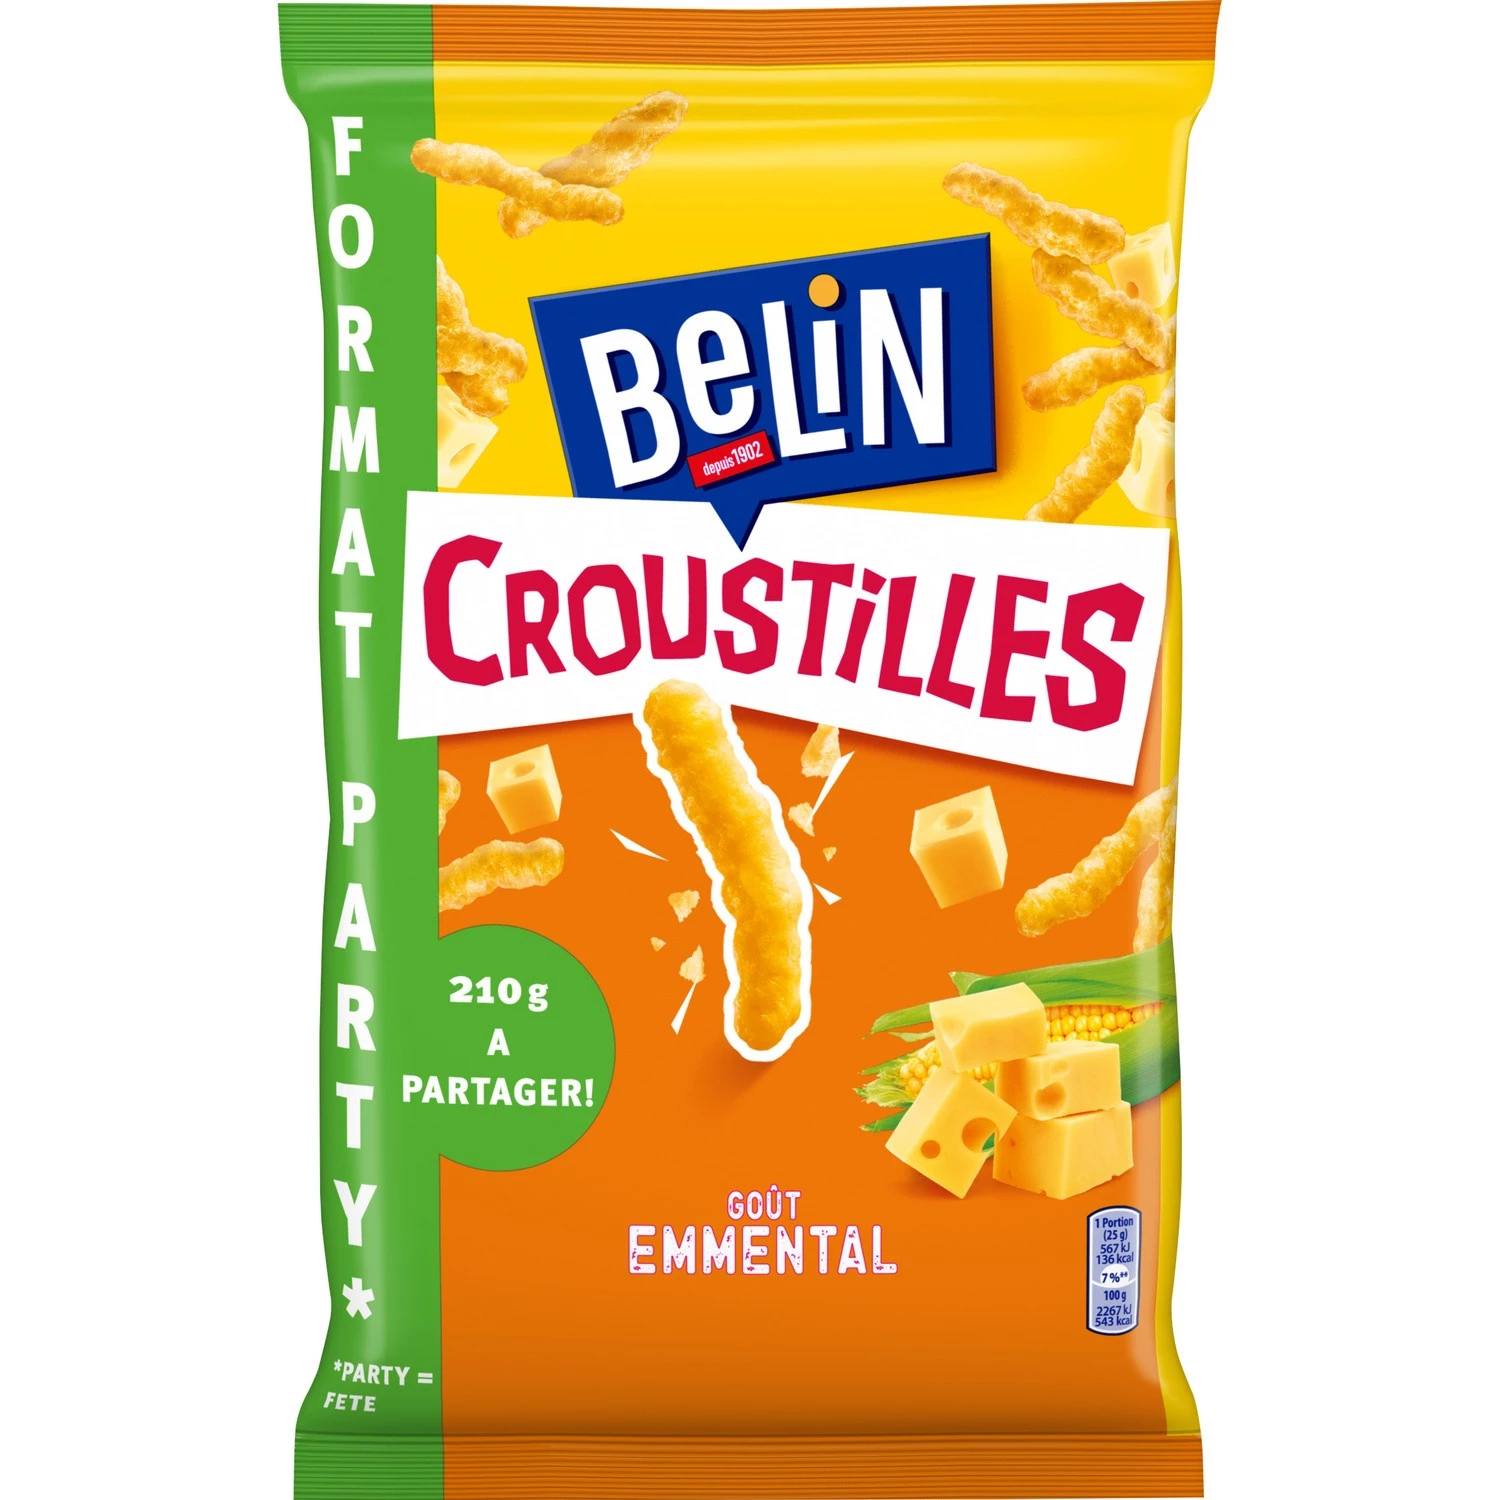 Biscuits Apéritifs Croustil les Goût Emmental, 210g - BELIN